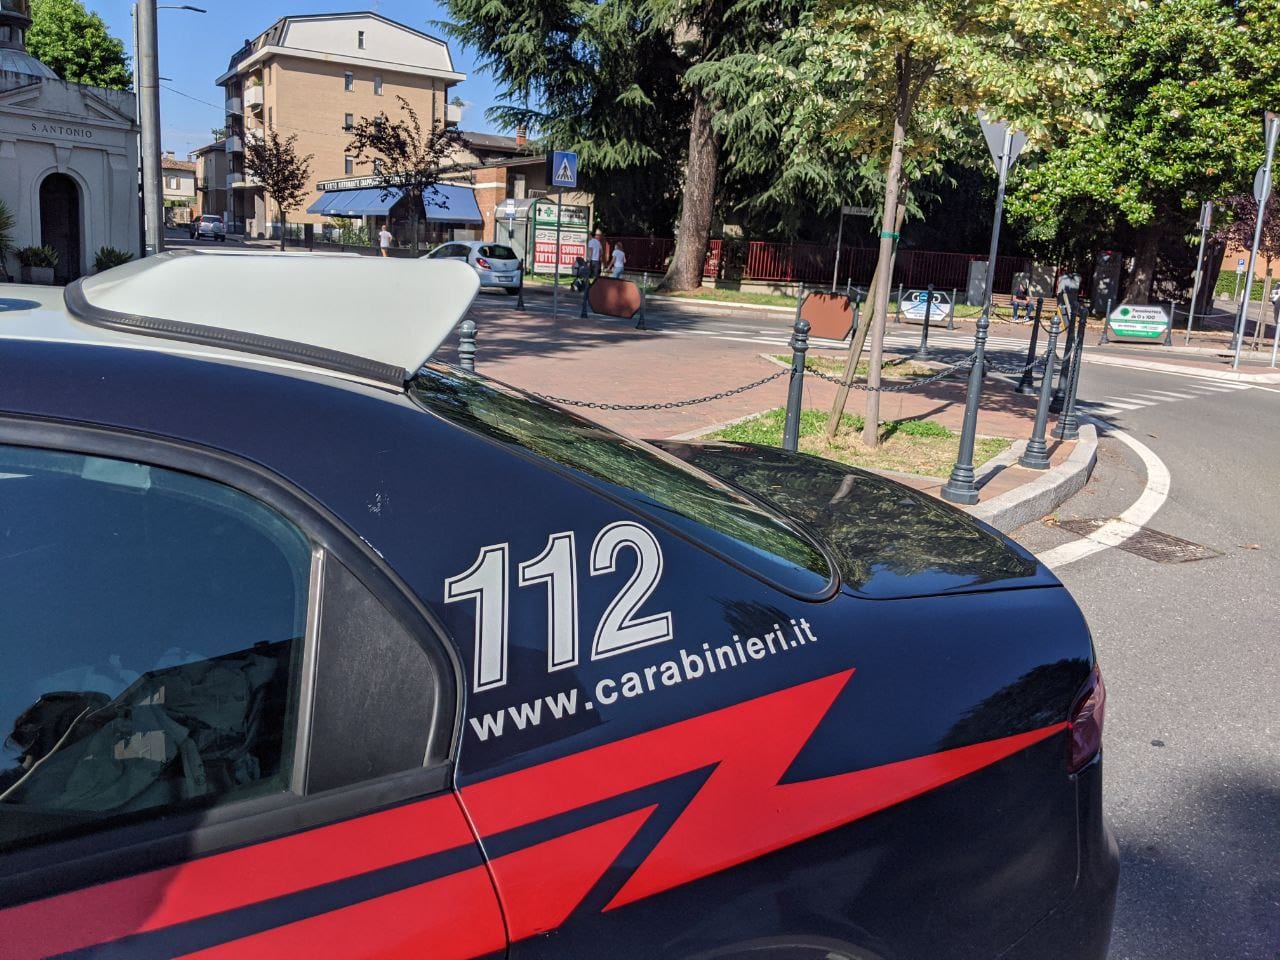 Dietro all’ospedale, carabiniere in borghese arresta parcheggiatore abusivo per estorsione